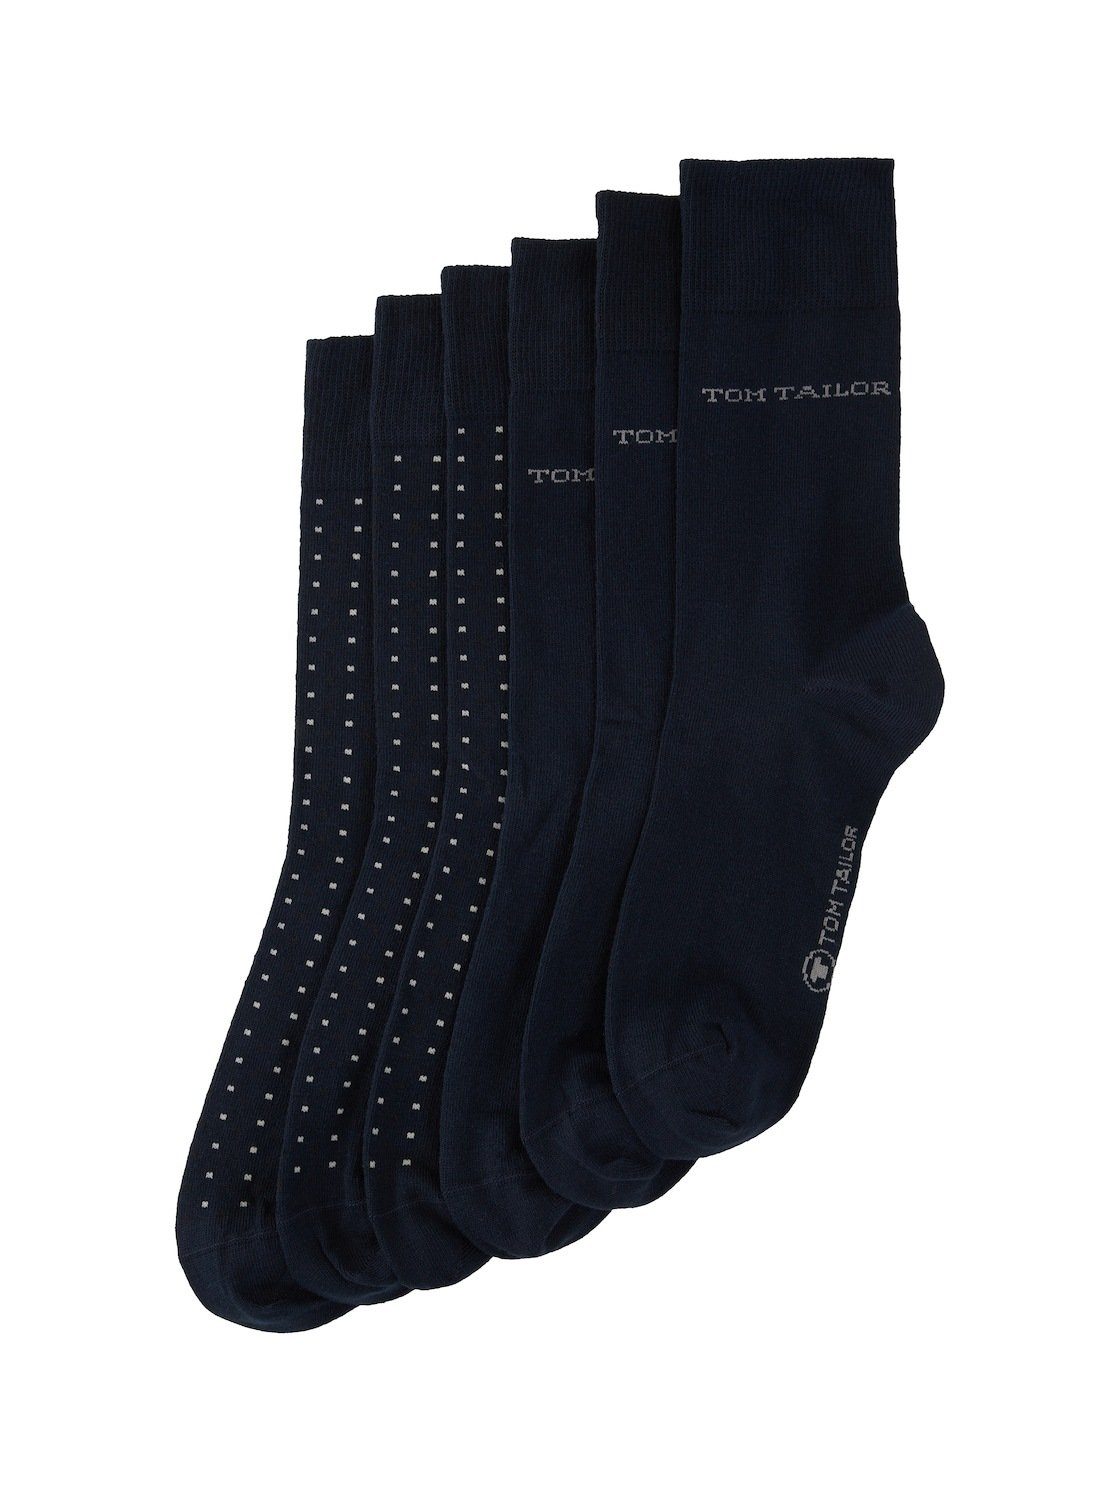 TOM Sechserpack) Socken Sechserpack Socken TAILOR (im Basic